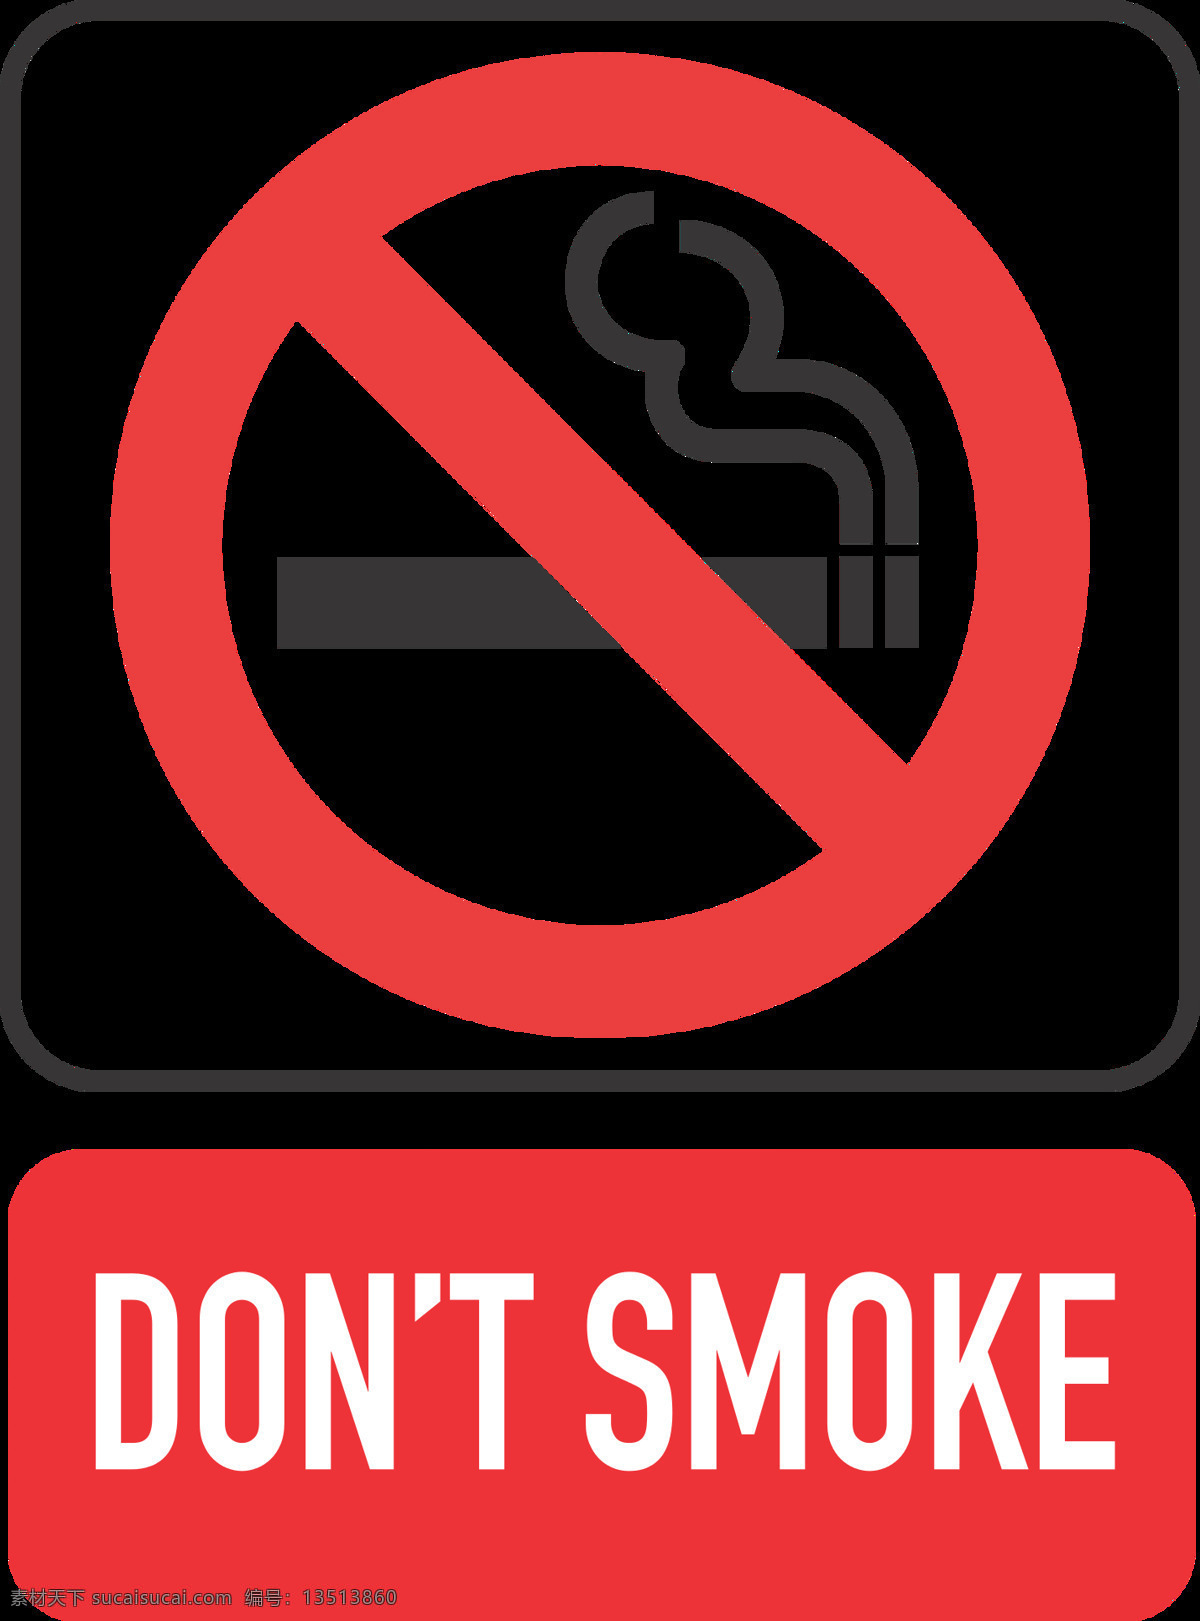 香烟 抽烟 烟灰 尼古丁 中华 双喜 烟气 吸烟标志 吸烟 吸烟logo 吸烟图标 禁止吸烟 严禁吸烟 烟草 烟壁纸 烟背景 烟设计 烟创意 标志图标 其他图标